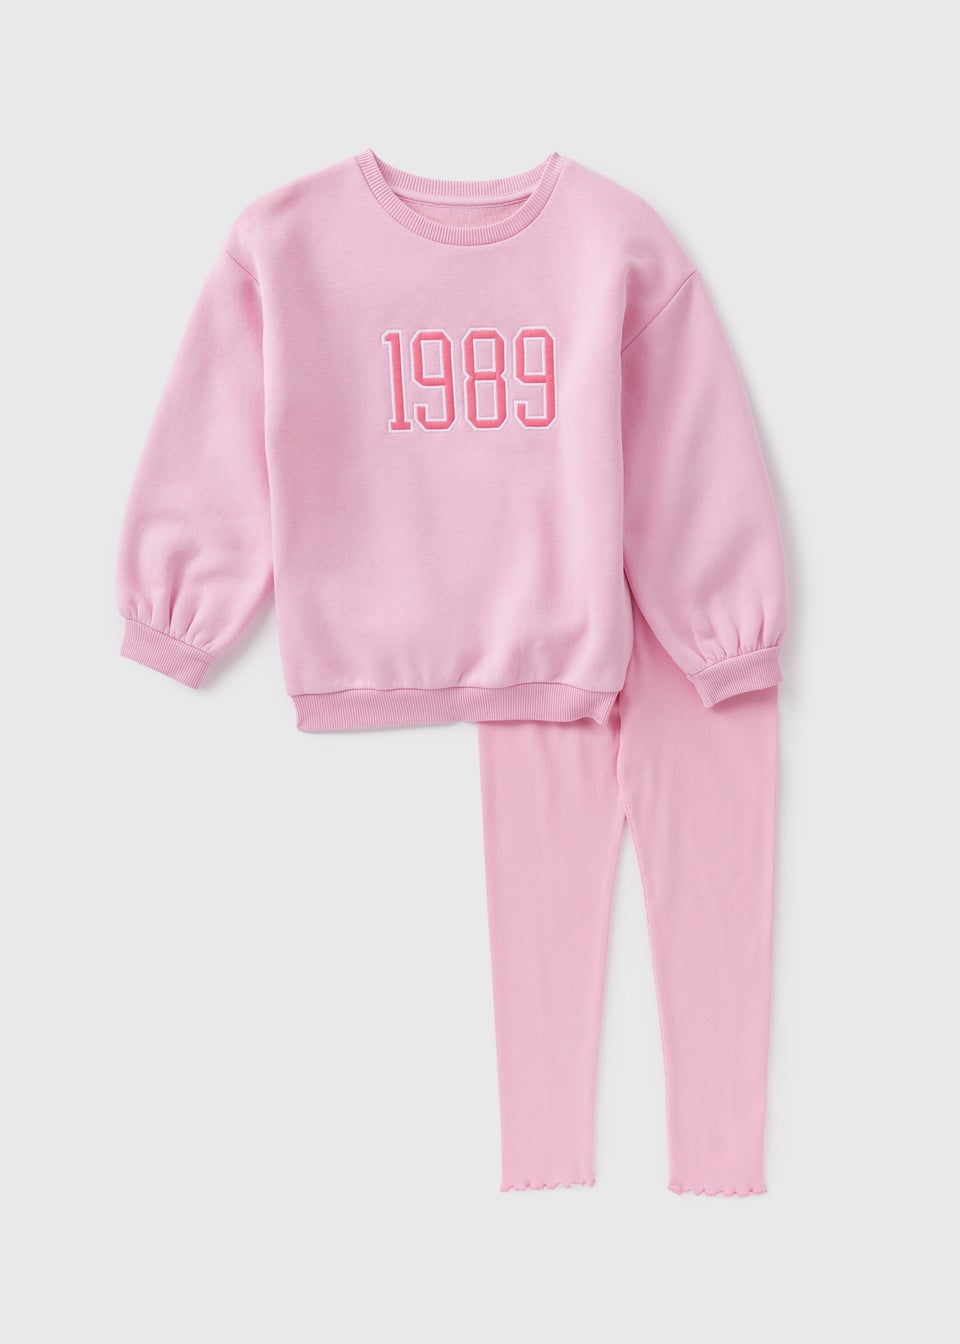 Girls Light Pink 1989 Sweatshirt & Leggings Set (1-7yrs)